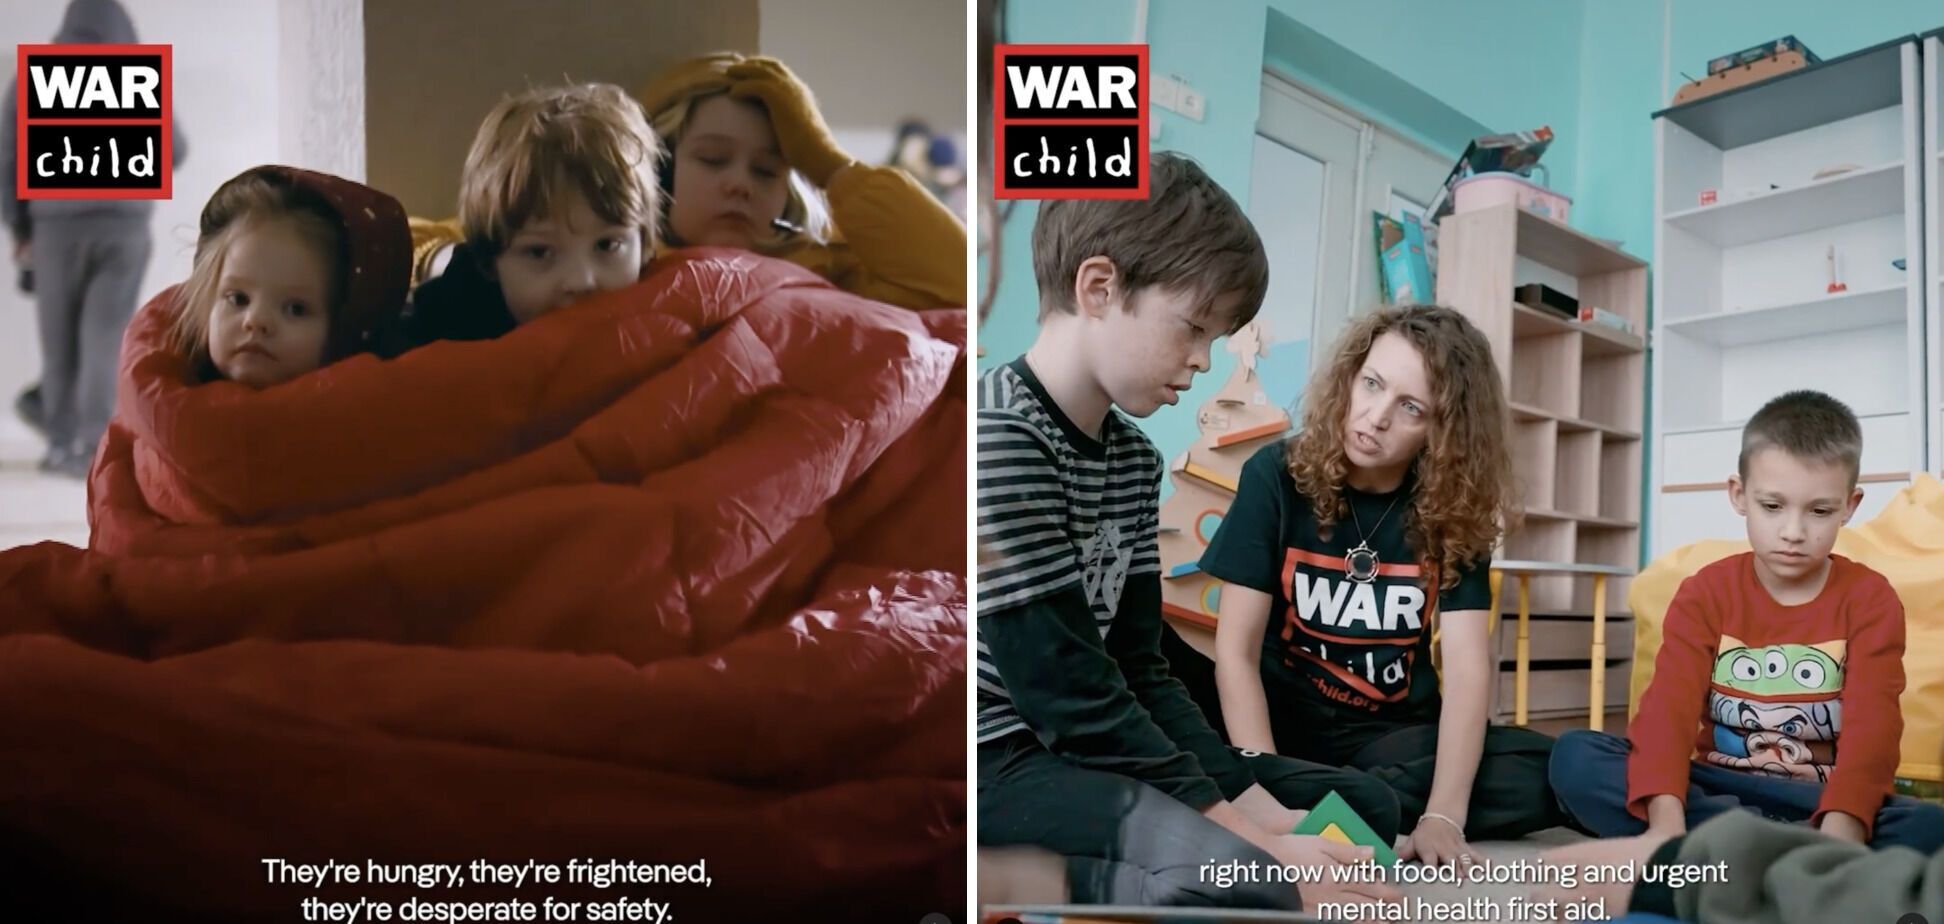 "Бомбы продолжают падать, разрушая жизнь": звезда сериалов "Корона" и "Секретные материалы" призвала помогать украинским детям войны